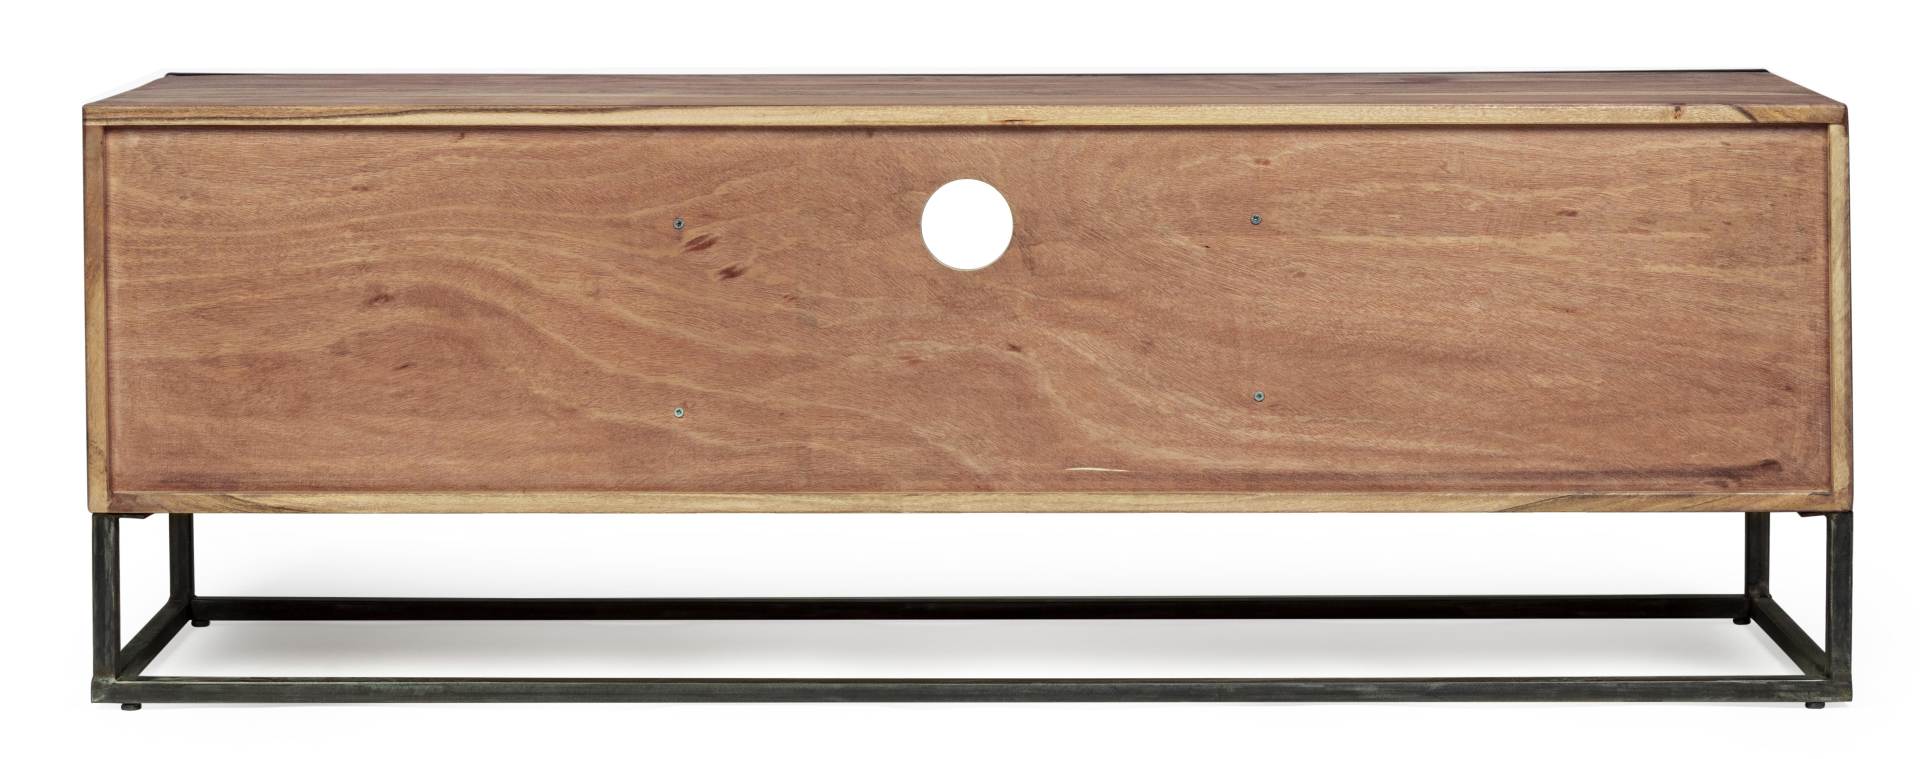 Das TV Board Egon überzeugt mit seinem modernen Design. Gefertigt wurde es aus Akazienholz, welches einen natürlichen Farbton besitzt. Das Gestell ist aus Metall und hat eine schwarze Farbe. Das TV Board verfügt über zwei Türen und eine Schublade. Die Bre